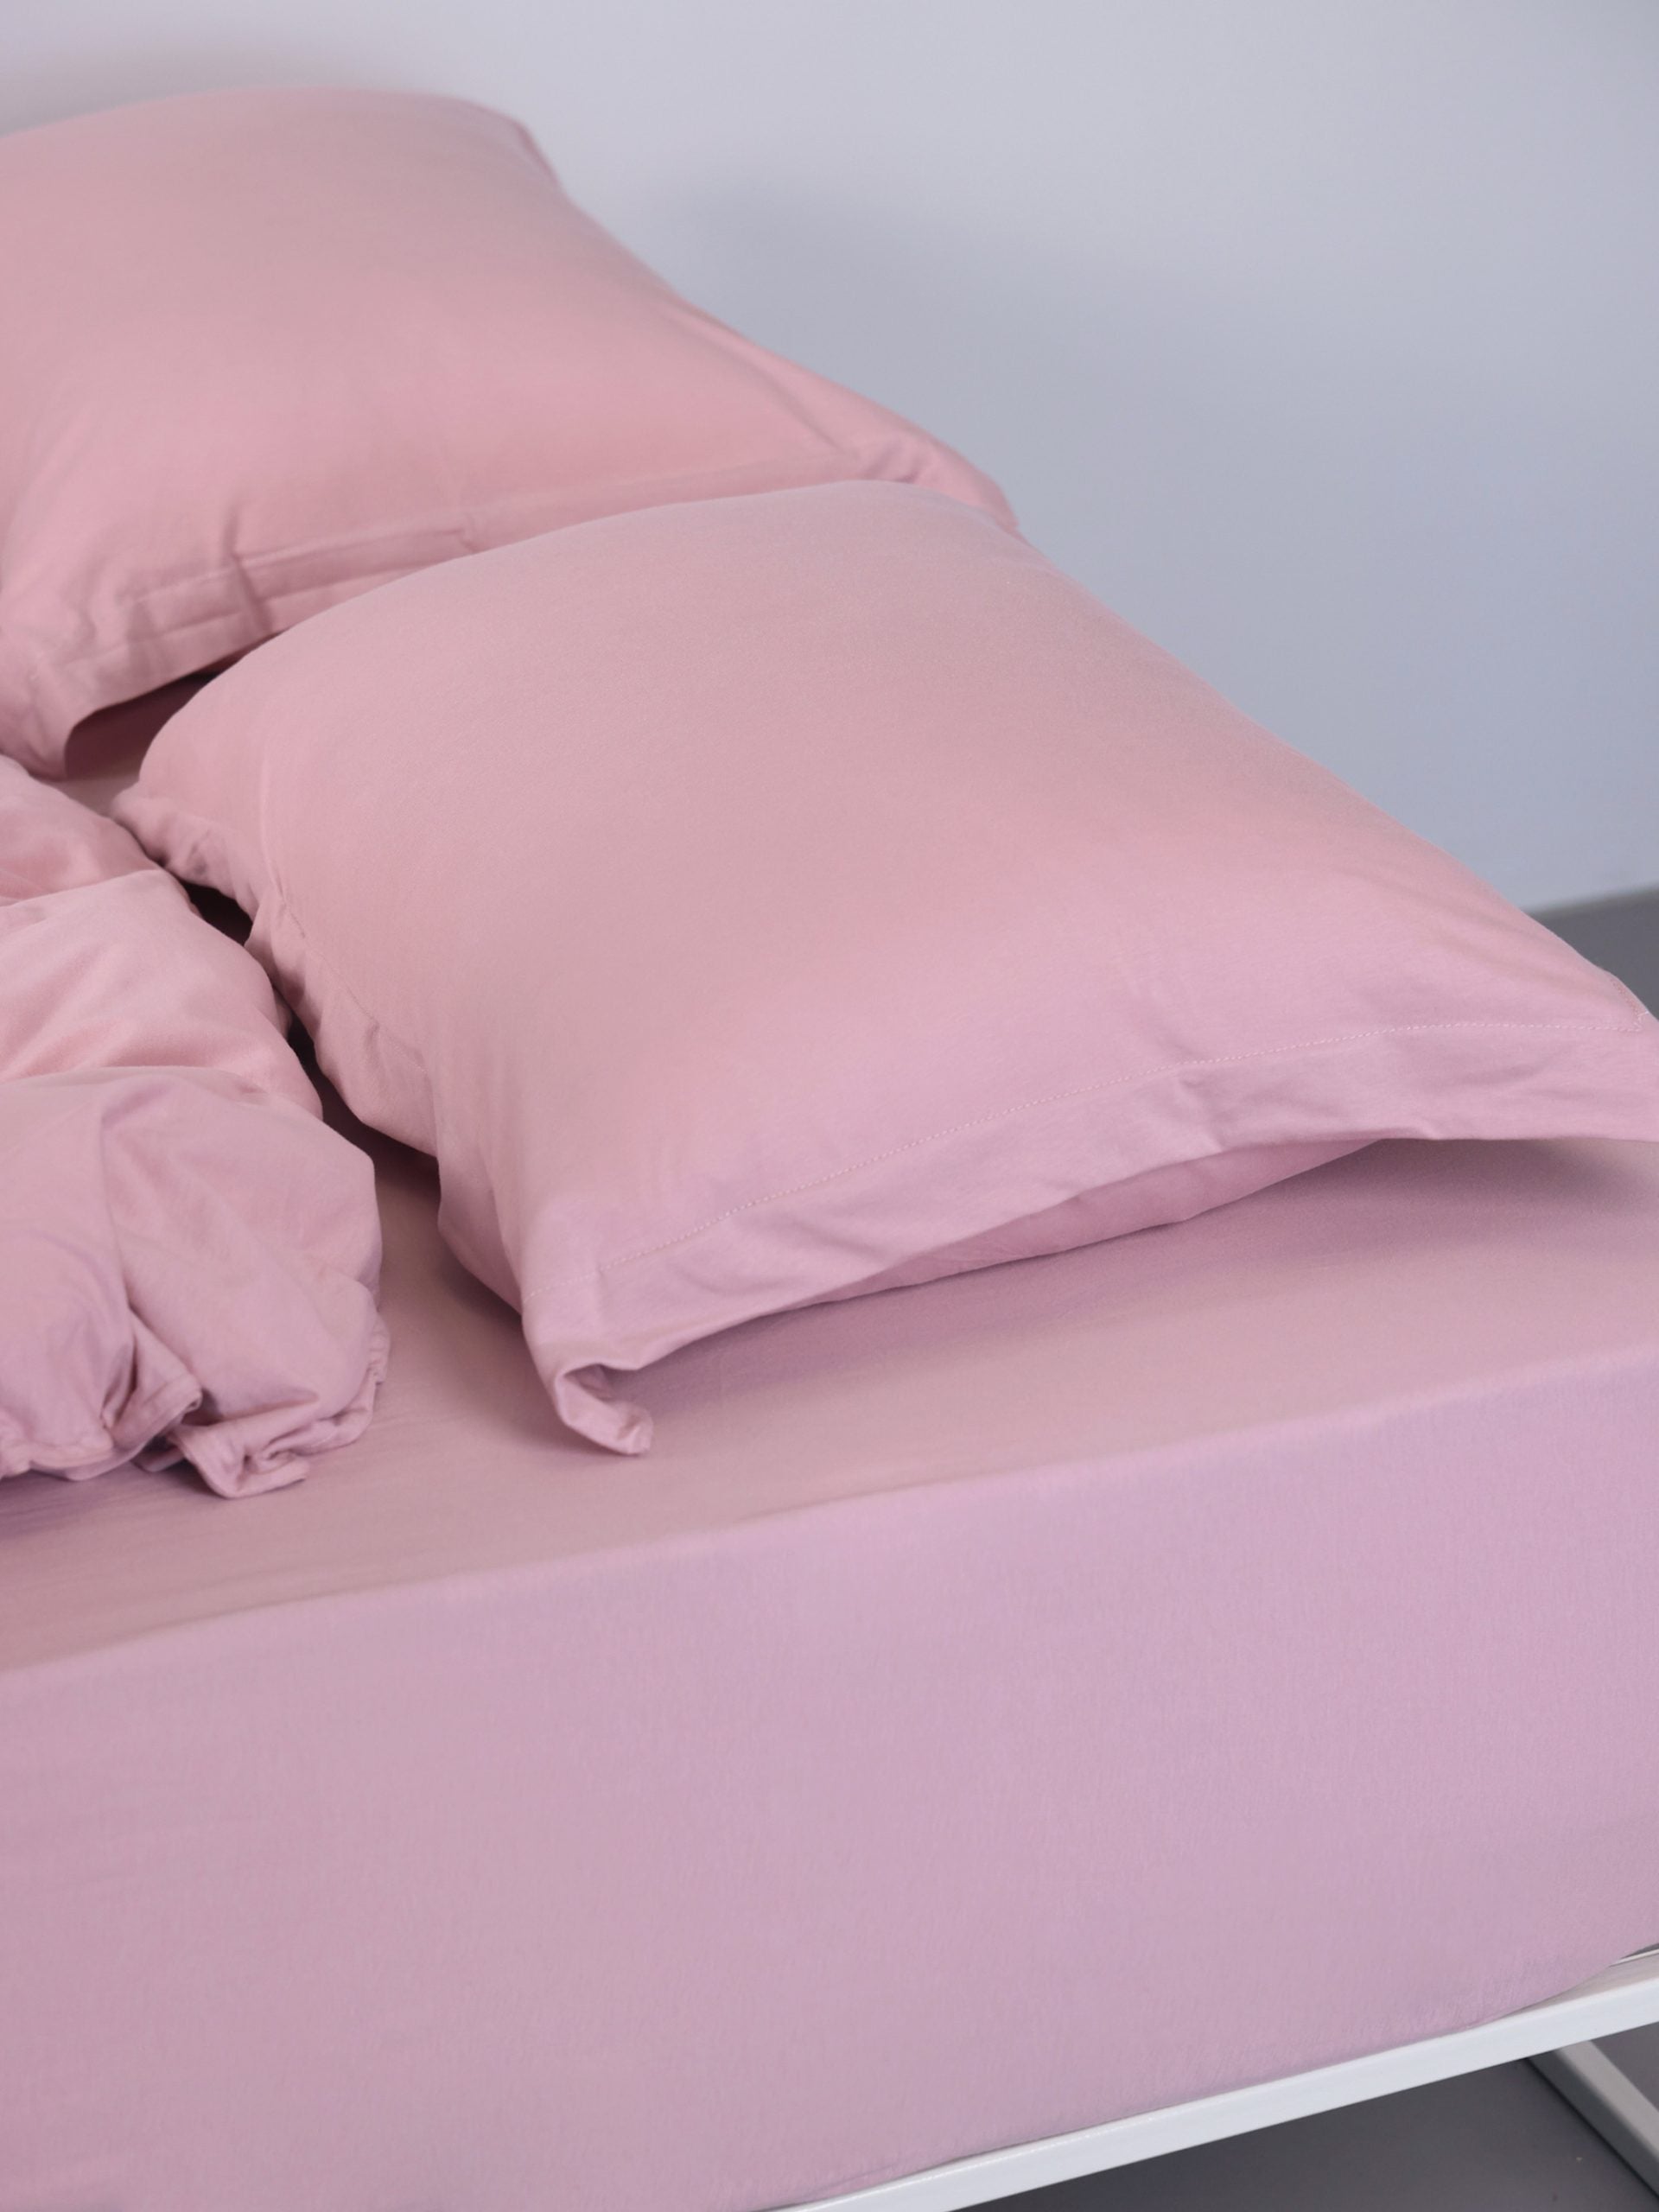 ראש מיטת ברזל לבנה עם סט מצעים וכריות עם ציפיות לכריות בצבע ורוד